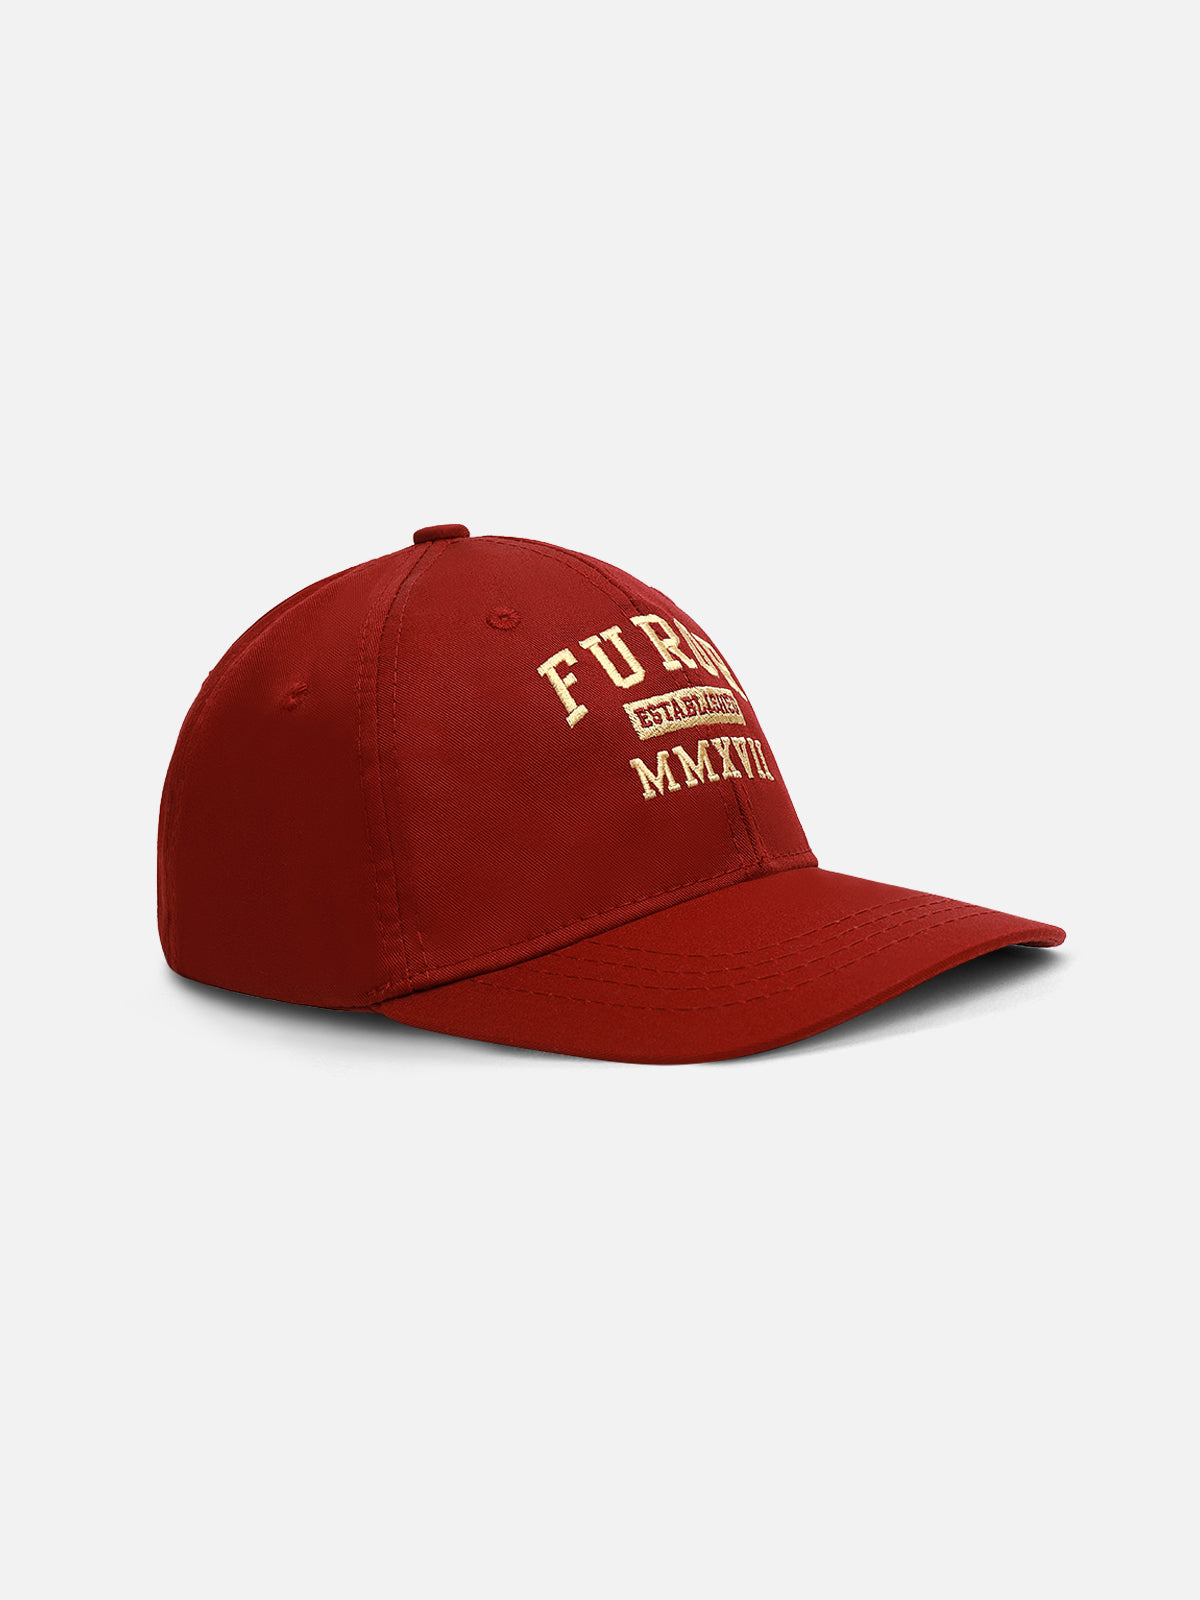 Maroon Baseball Cap - FAC23-016